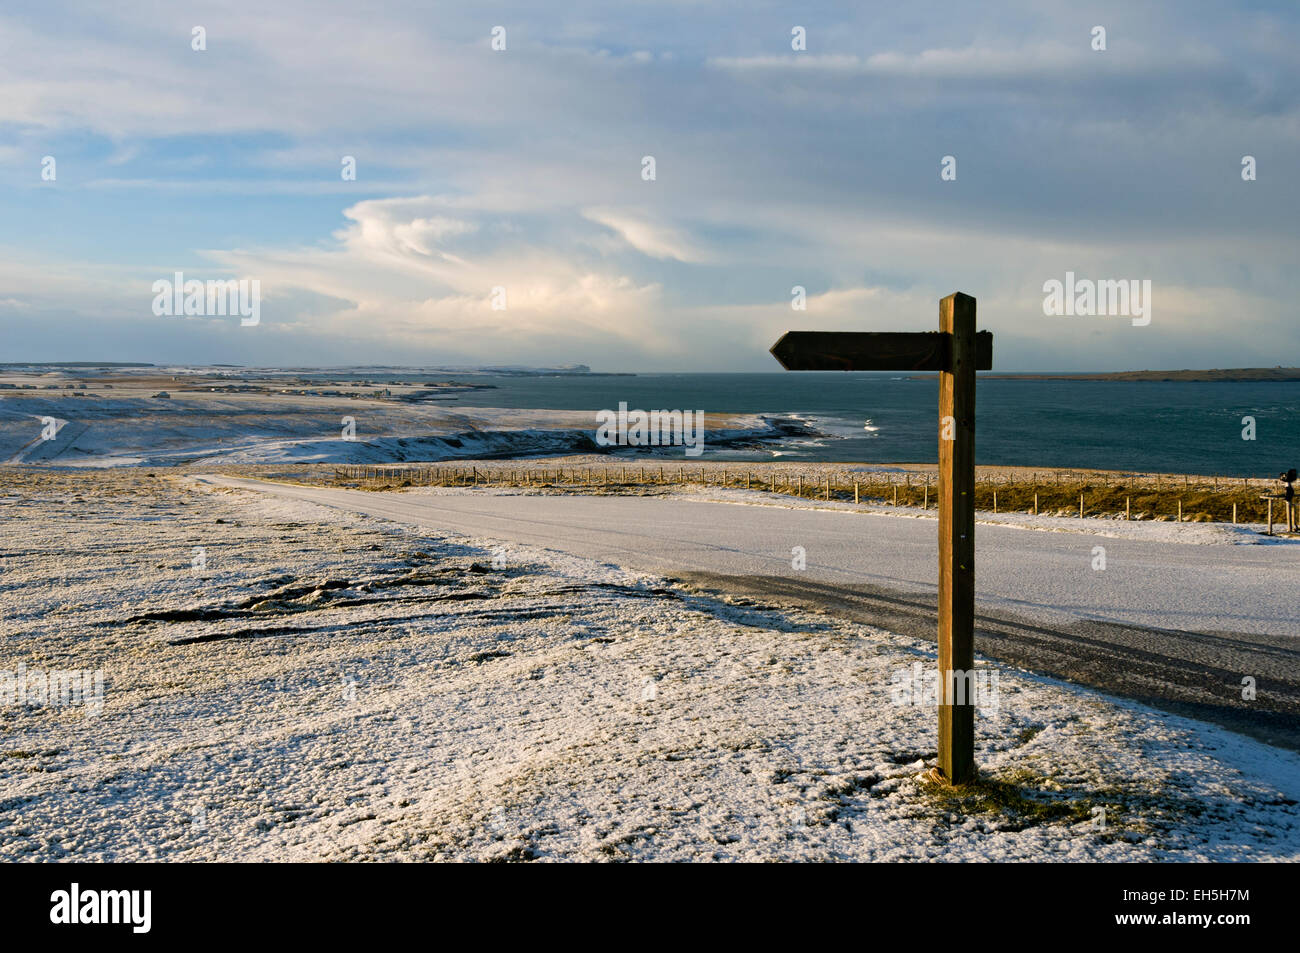 Panneau sentier à Duncansby Head, près de John O'Groats, Caithness, Ecosse, Royaume-Uni. À l'égard de la distance tête Dunnett. Banque D'Images